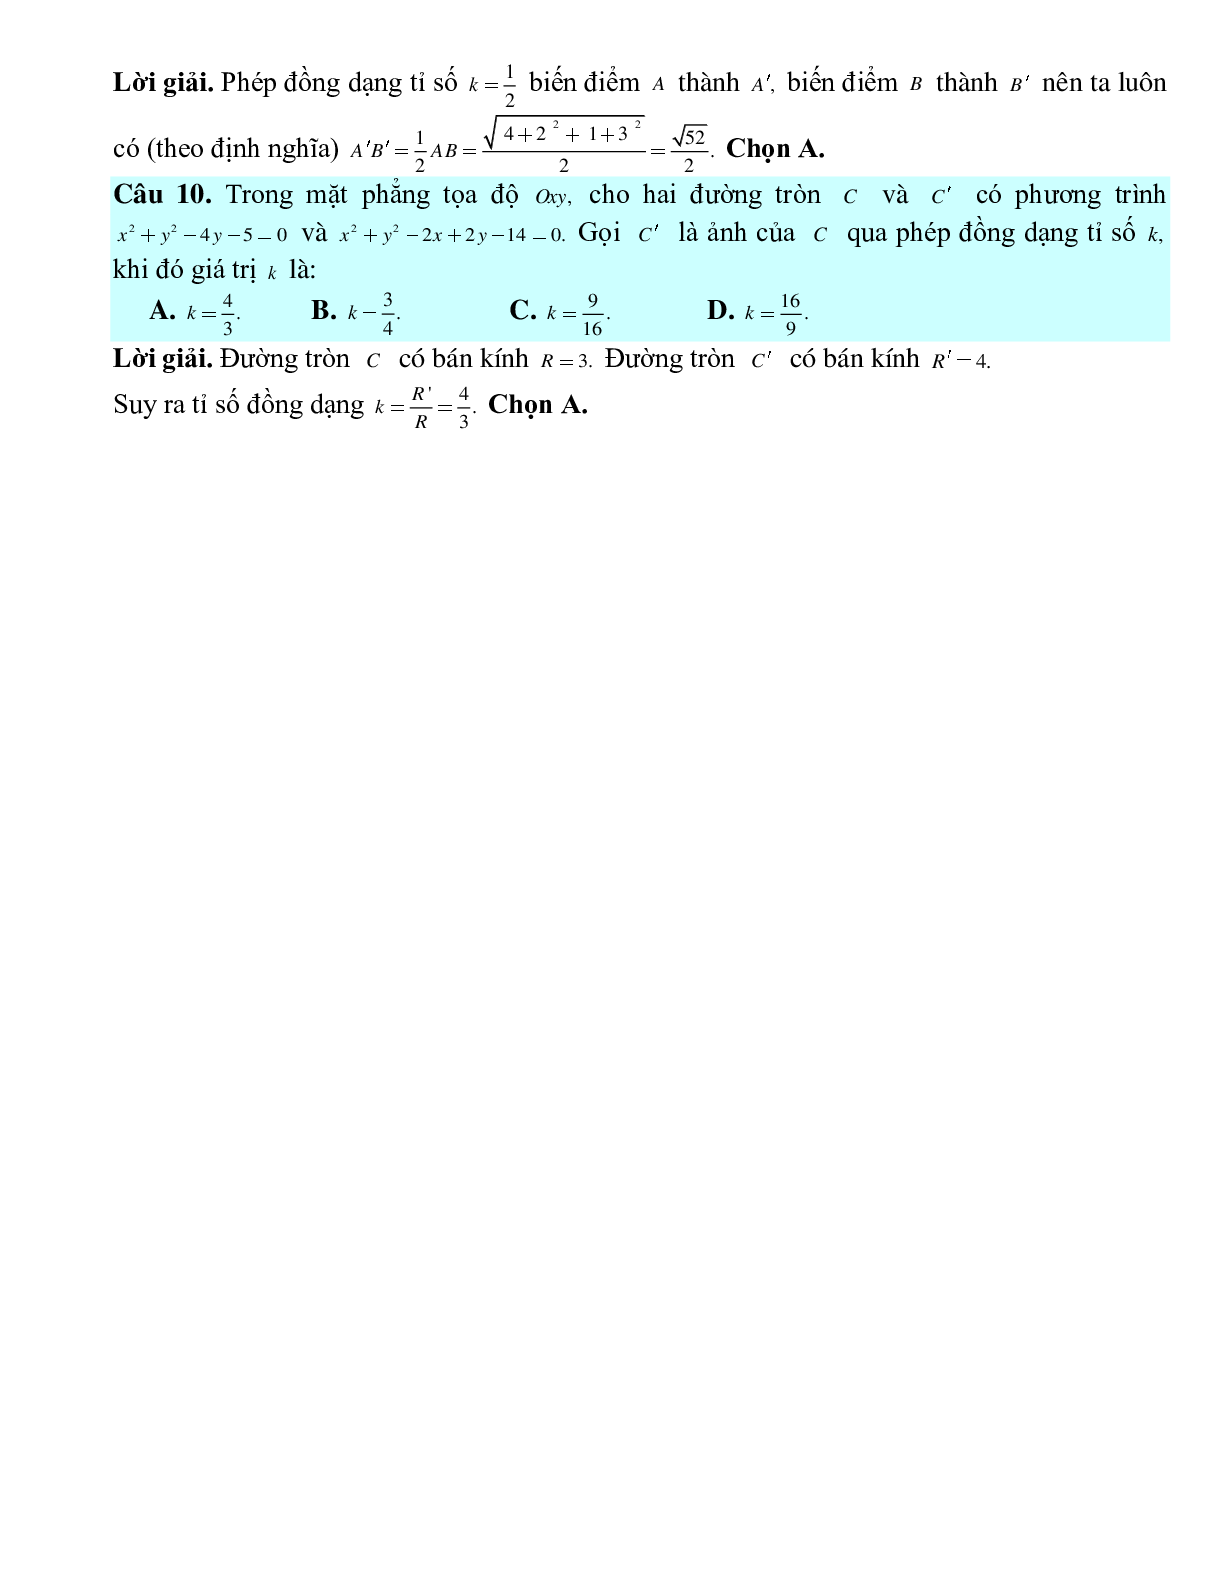 Bài tập Toán hình 11 Bài 8 có đáp án: Phép đồng dạng (trang 5)